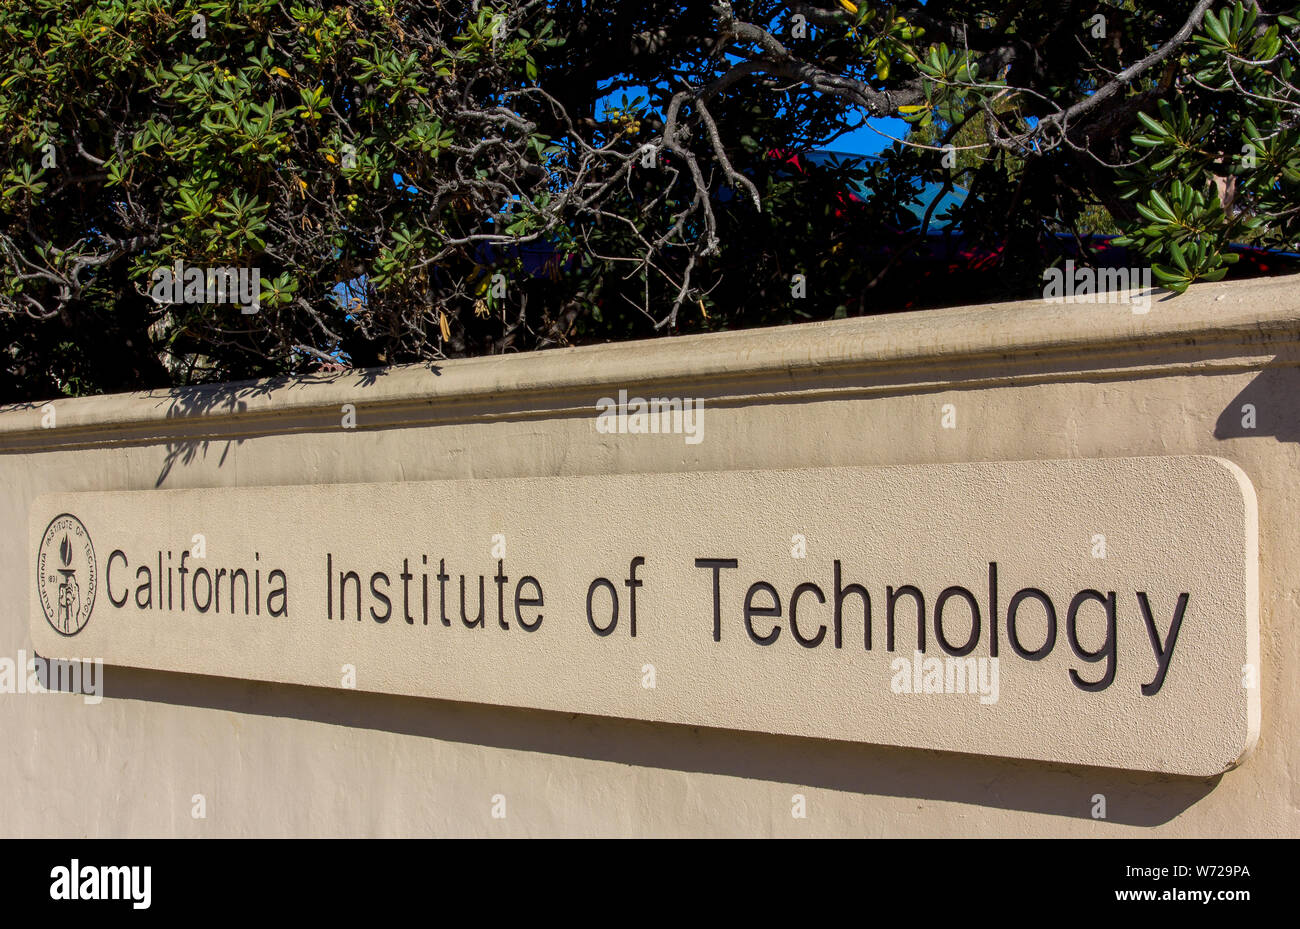 PASADENA, CA/USA - Octobre 1 : Panneau d'entrée sur le campus de l'Institut de technologie de Californie. Caltech est une université de recherche de Pasadena, CA et Banque D'Images